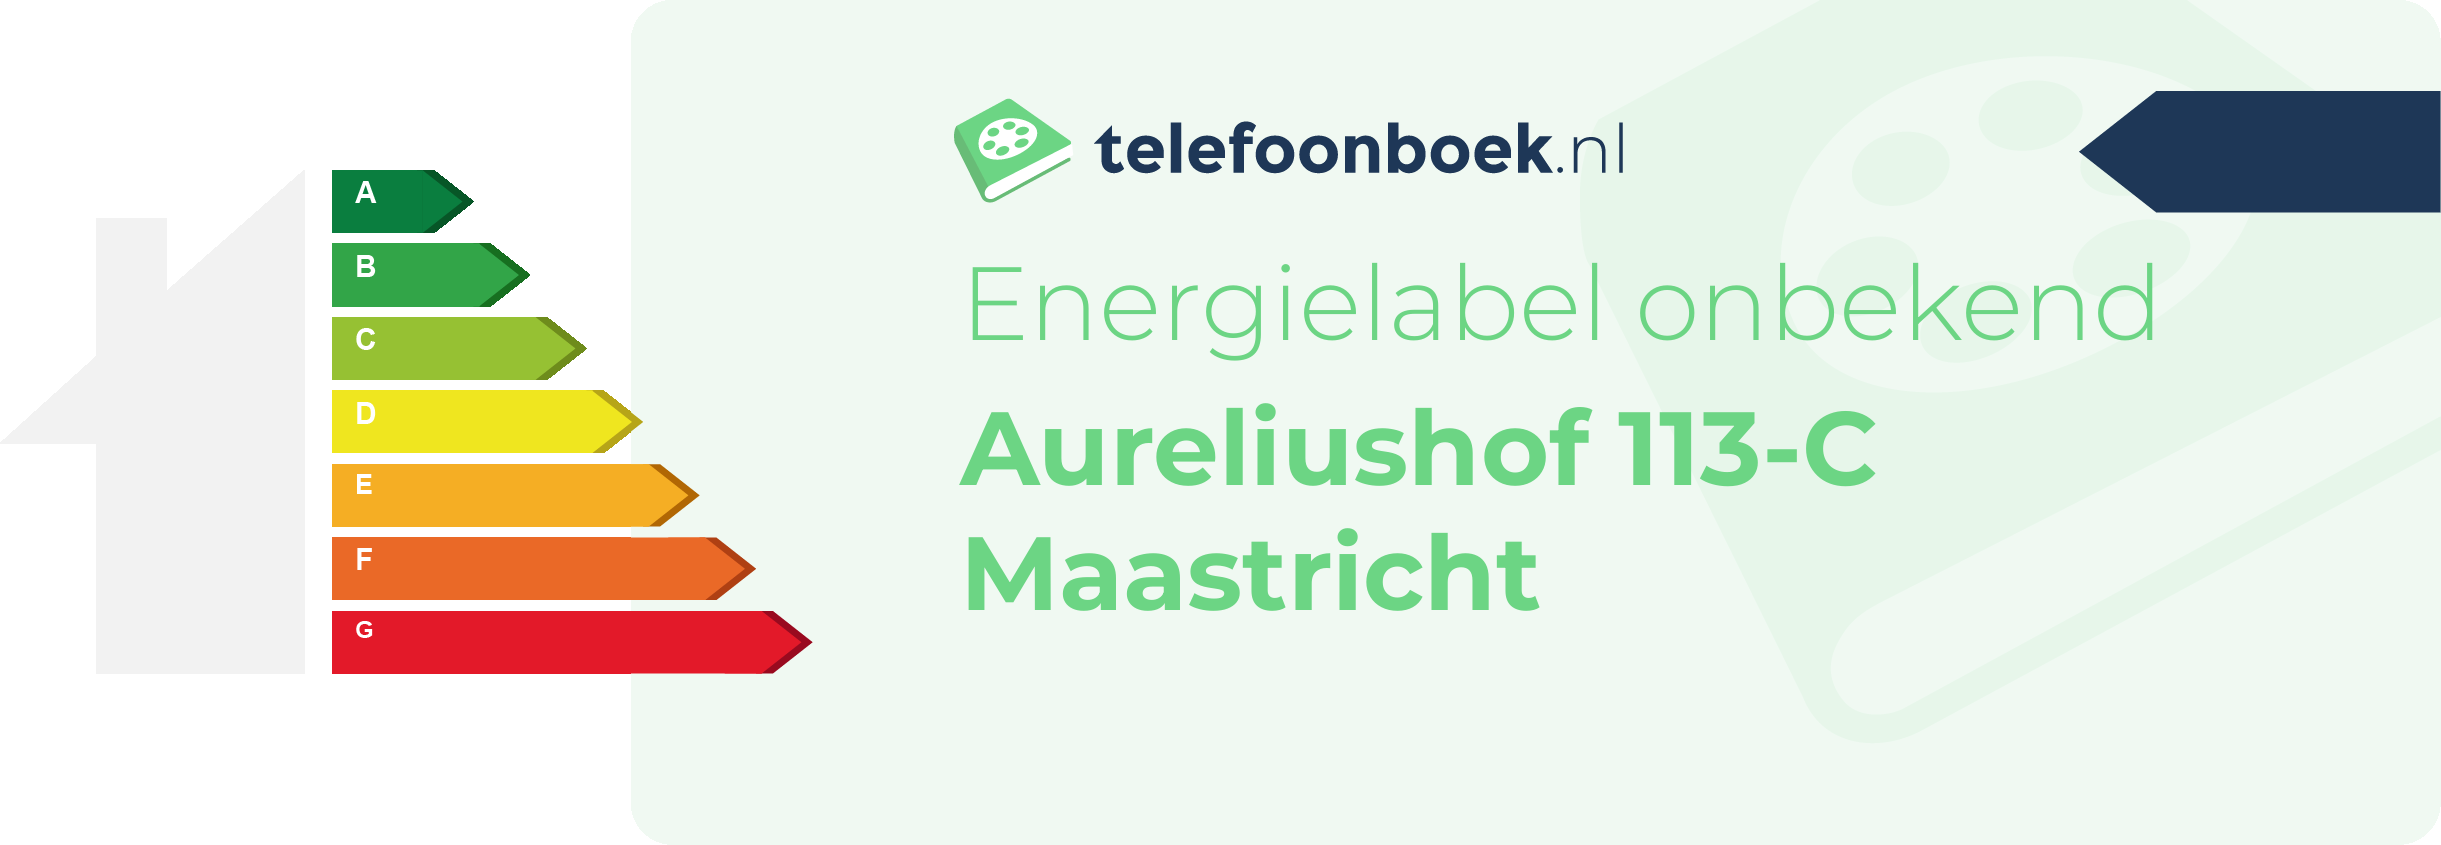 Energielabel Aureliushof 113-C Maastricht